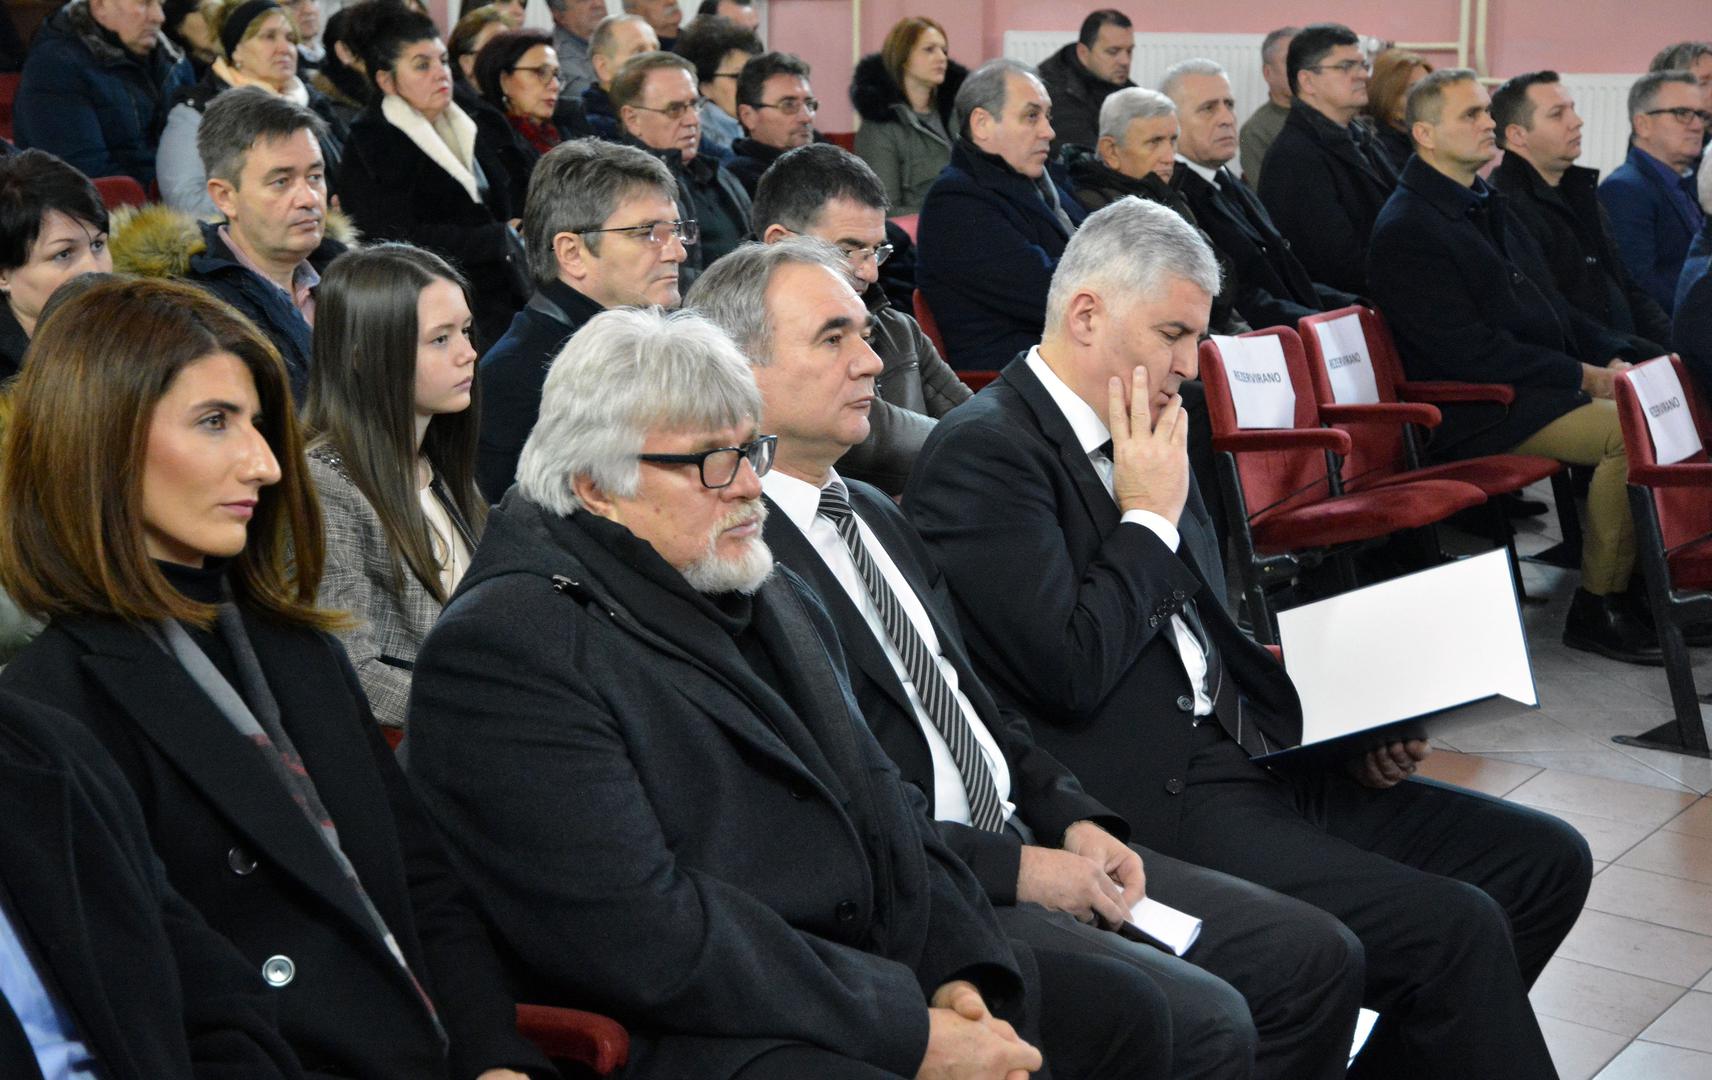 Predsjednik vlade Županije Posavske Marijan Klaić rekao je kako je Gregurević s filmskim festivalom promovirao rodni kraj.

